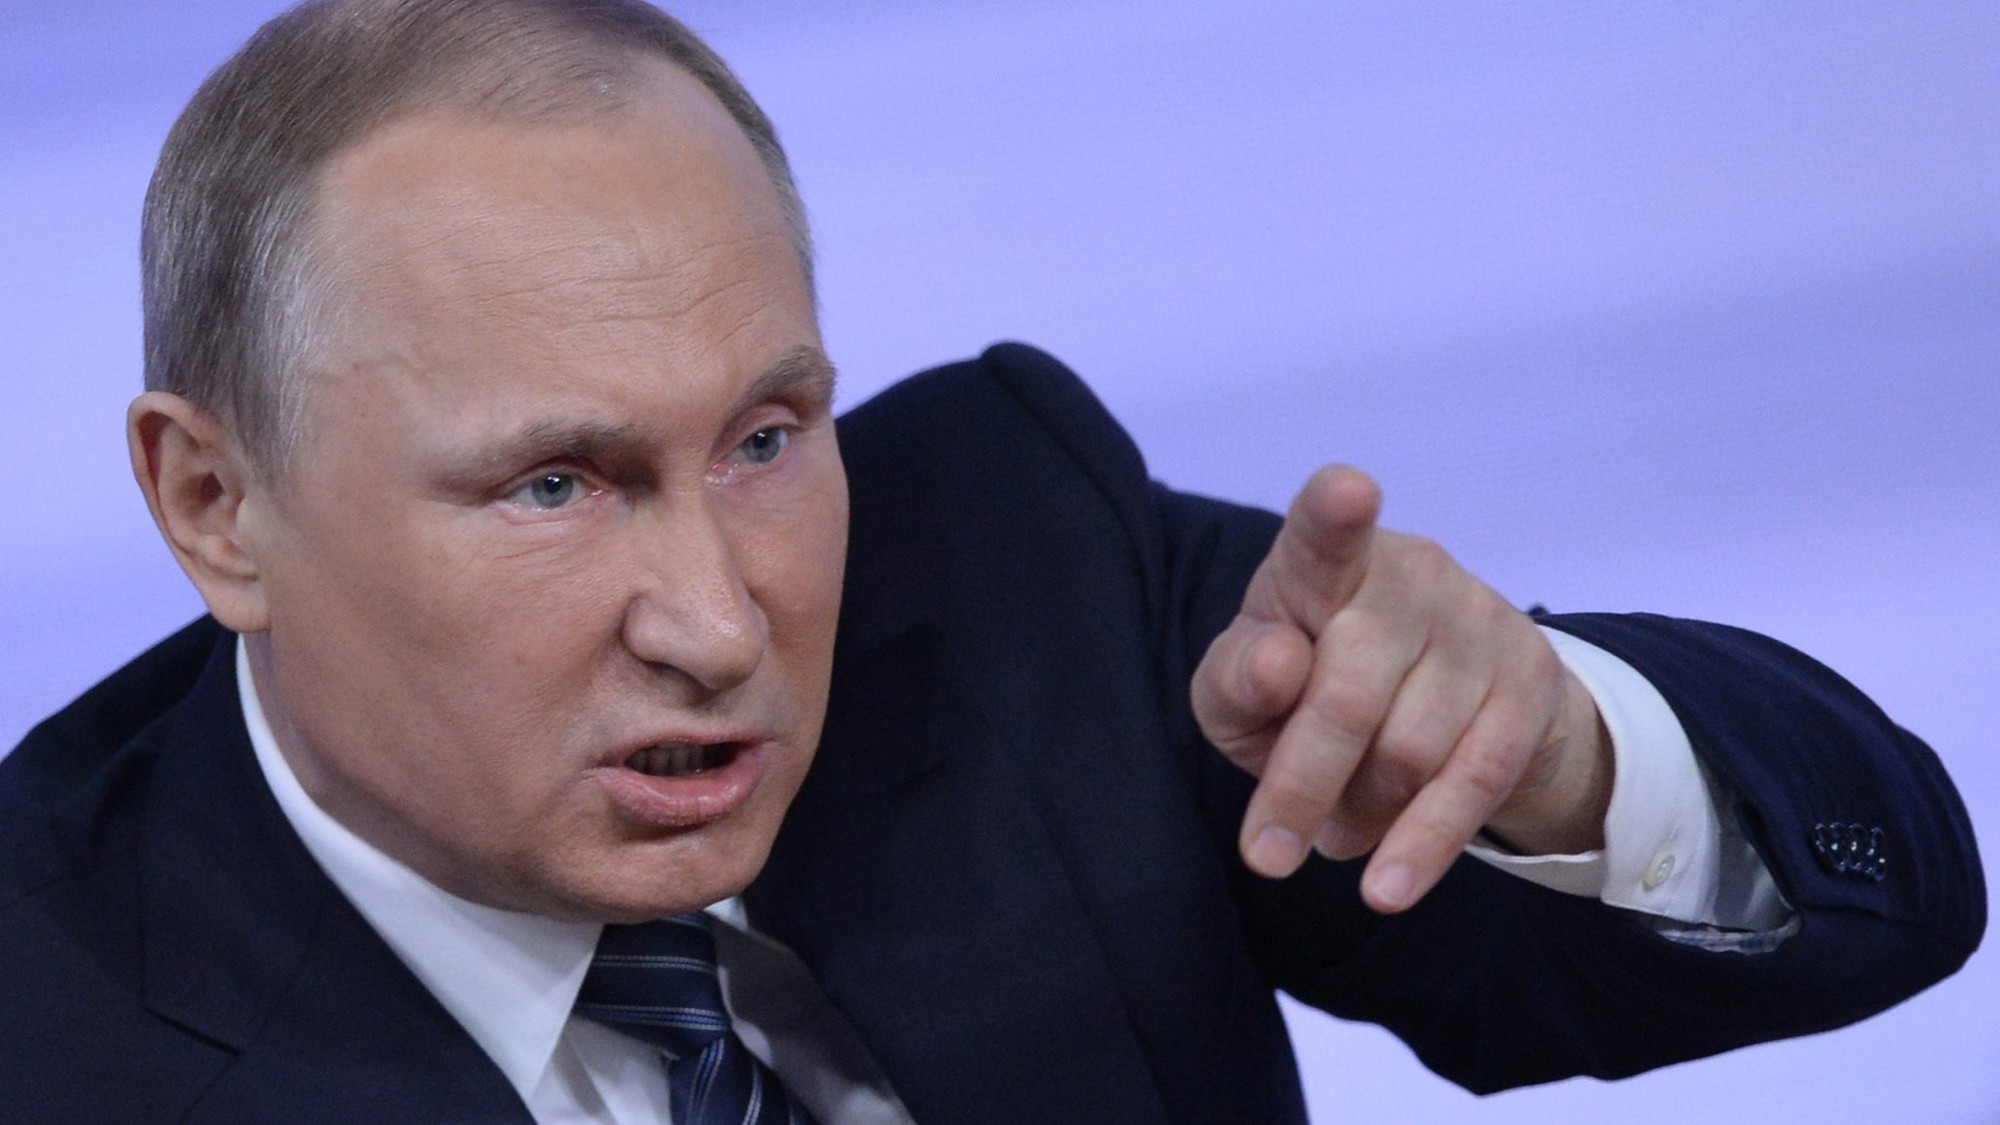 Nước cờ của ông Putin đối với Ukraine khiến Mỹ bối rối - Ảnh 1.